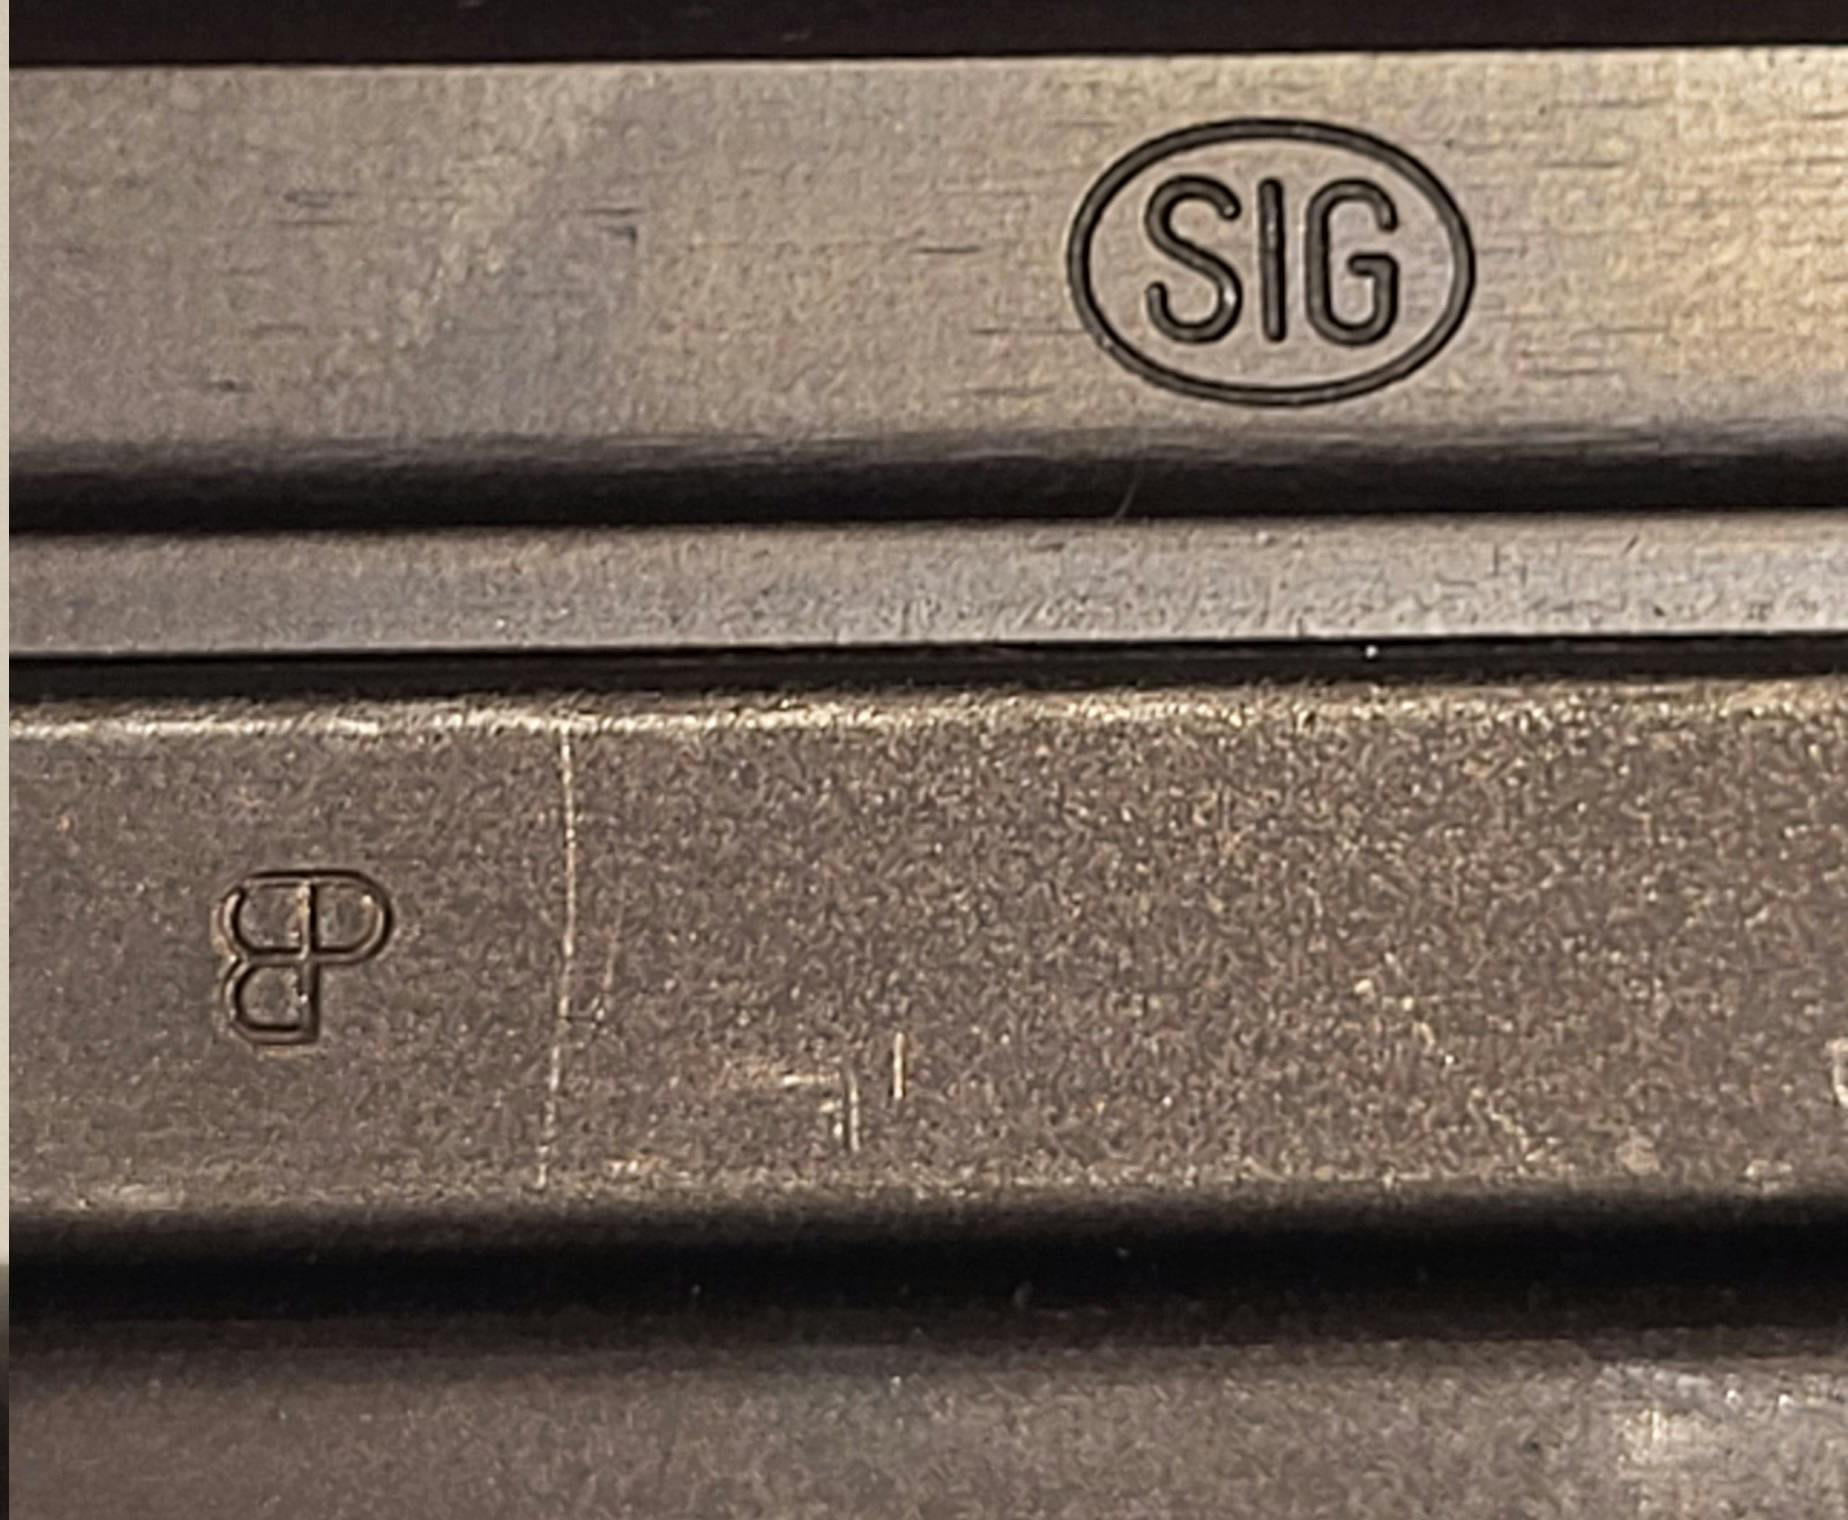 SIG P210-6: Eidgenössischer Beschussstempel (der Form nach auch "Bundesprobe" genannt) oberhalb des Abzugbügels. Zugelassen!